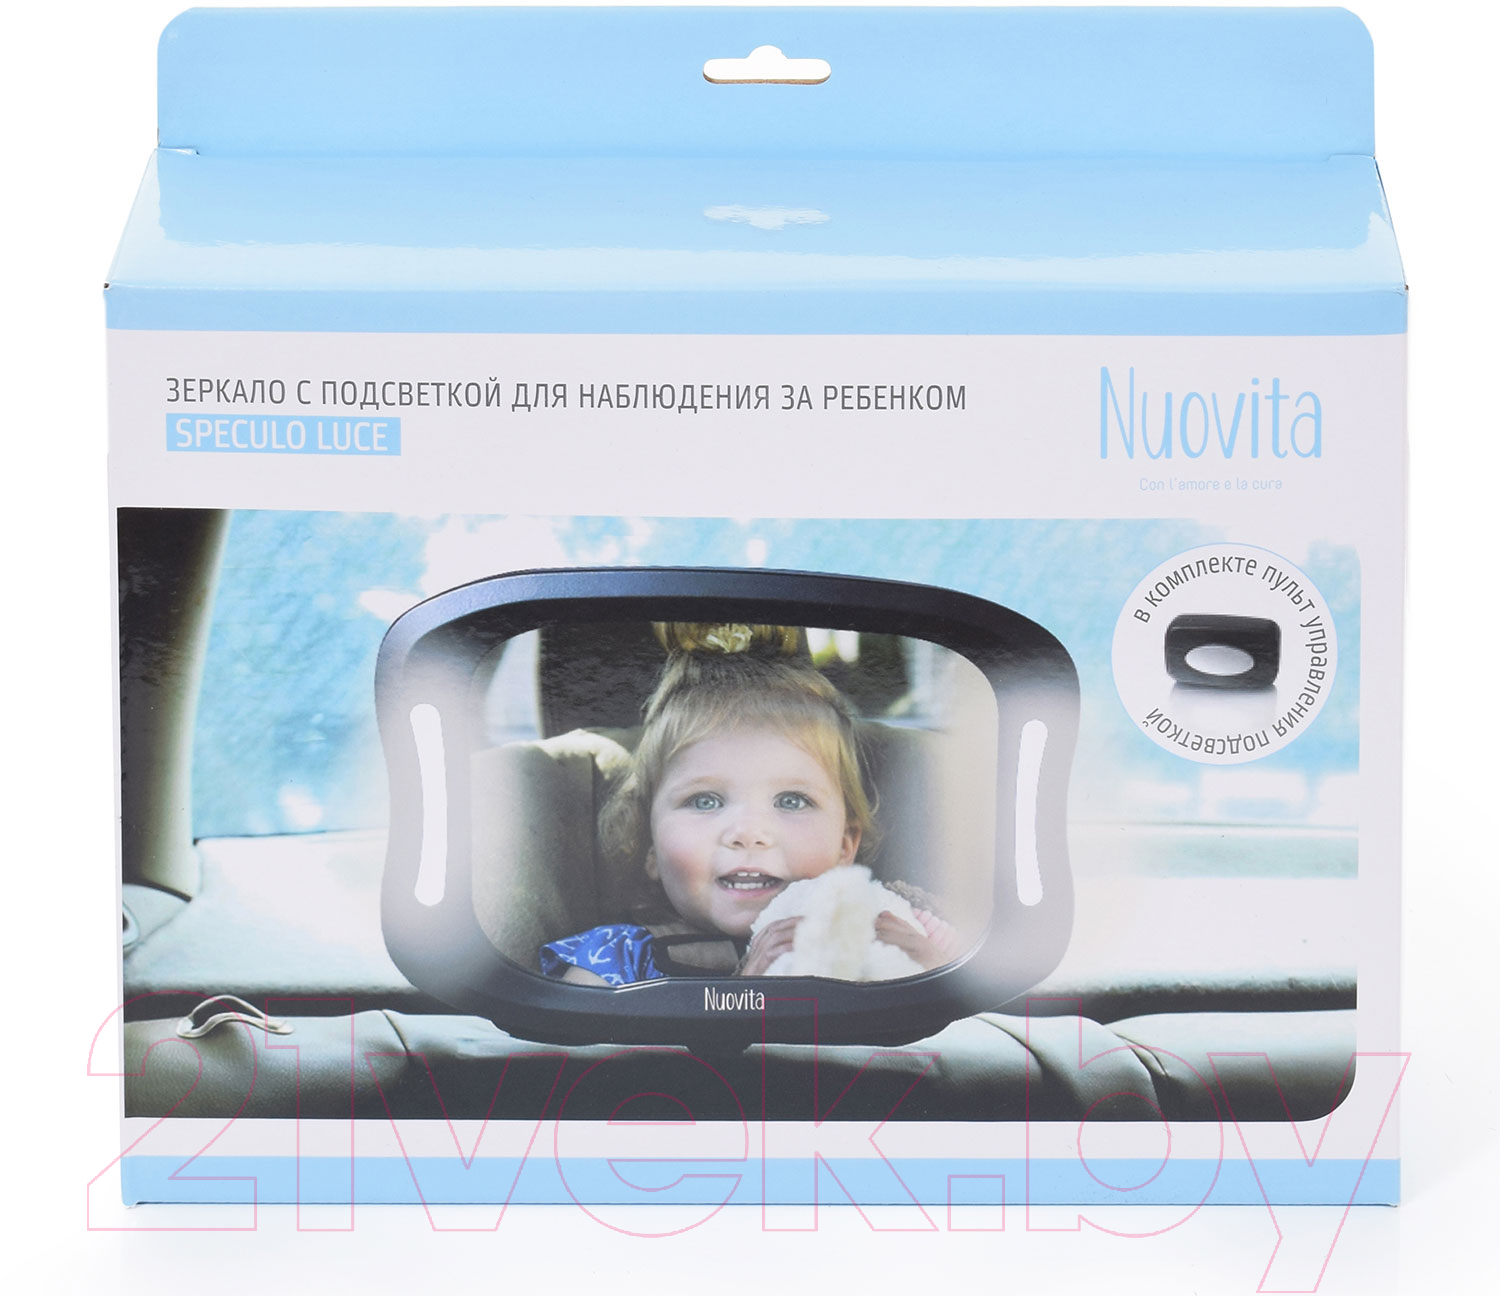 Зеркало для присмотра за ребенком Nuovita Speculo Luce